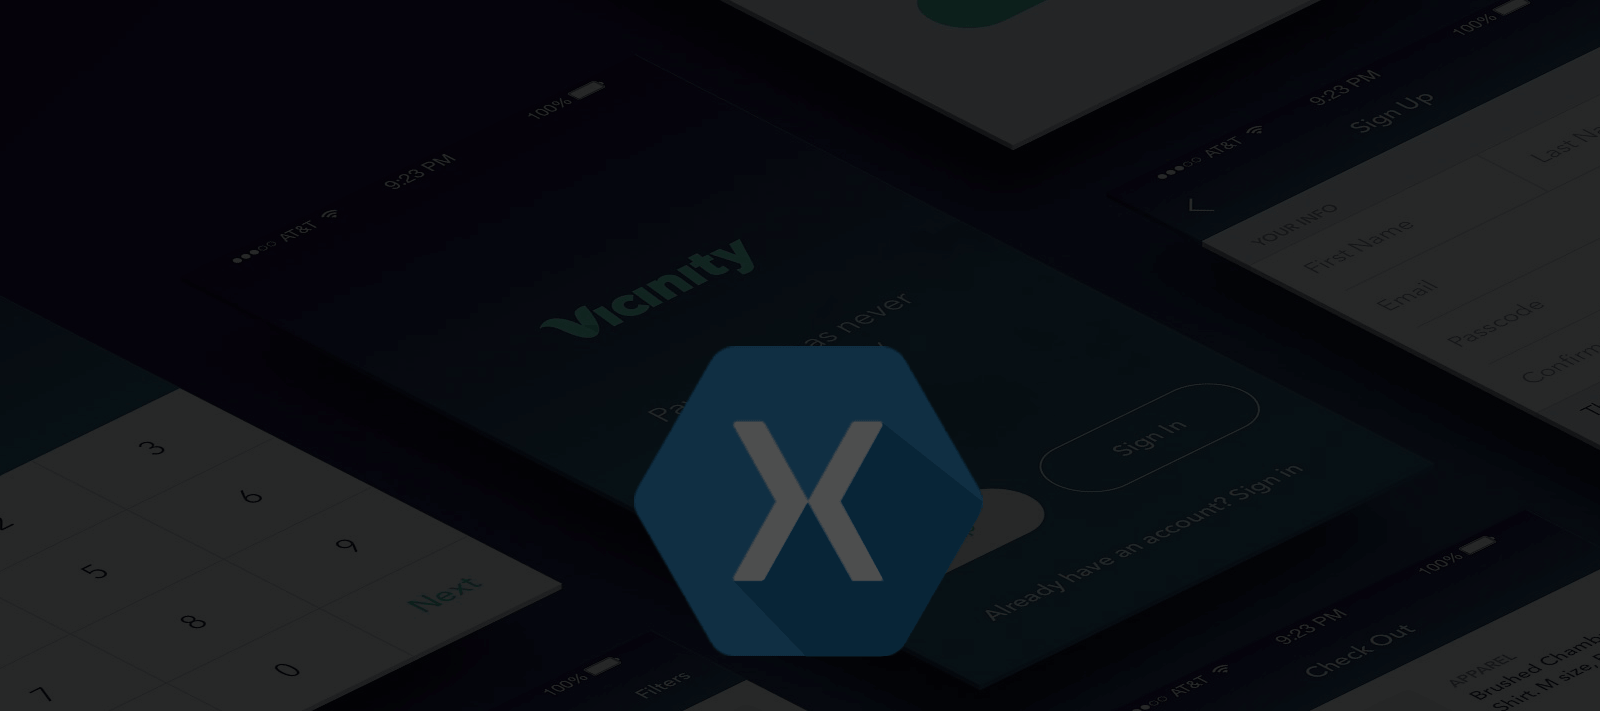 Infographic: Xamarin – Cross Platform App Development Tools in 2016